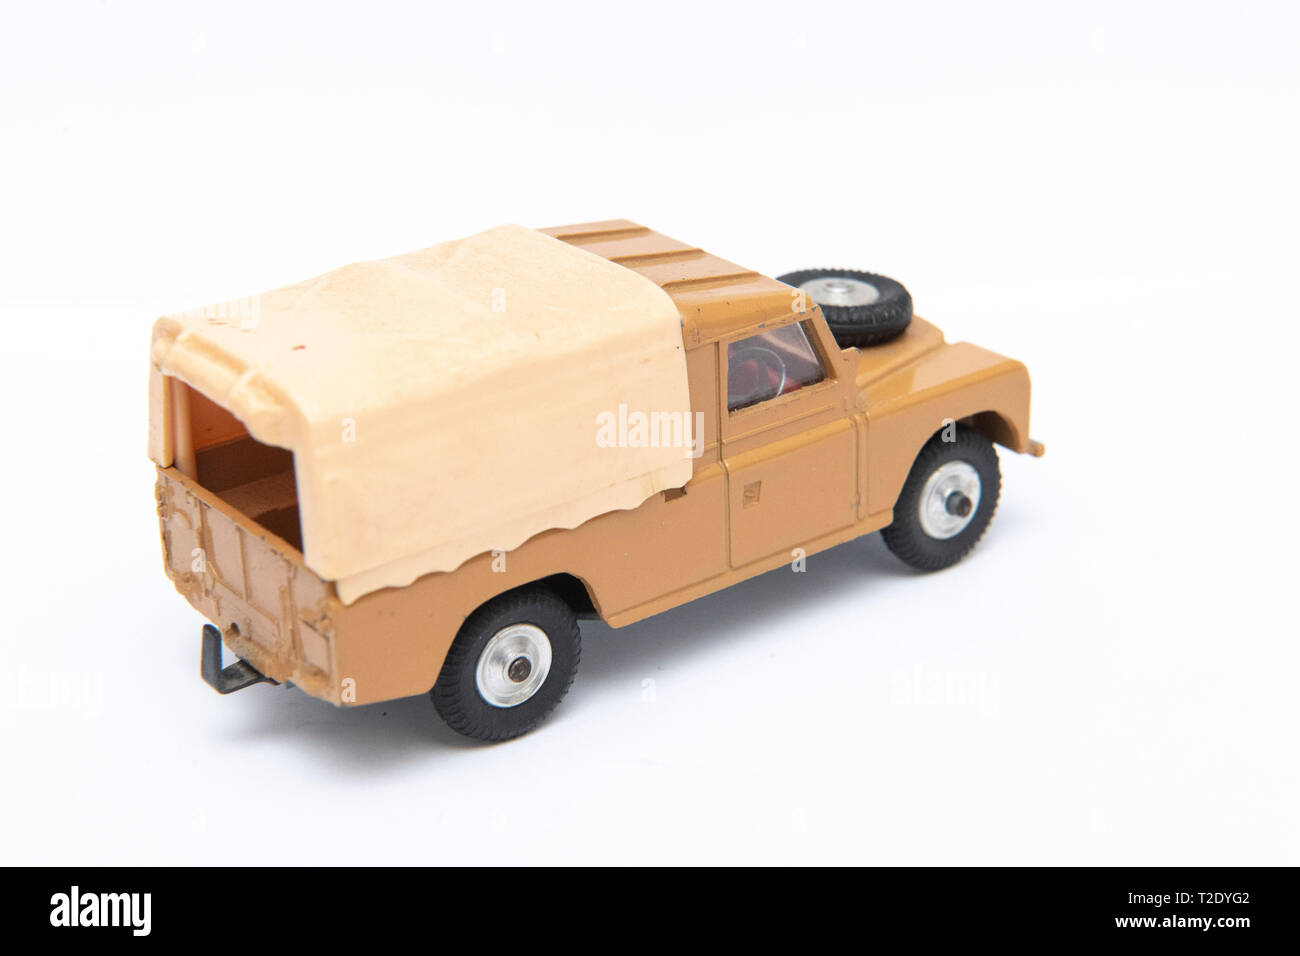 1/43 scale vintage Corgi Toys model No 438 Land Rover 109 WB on a white background Stock Photo